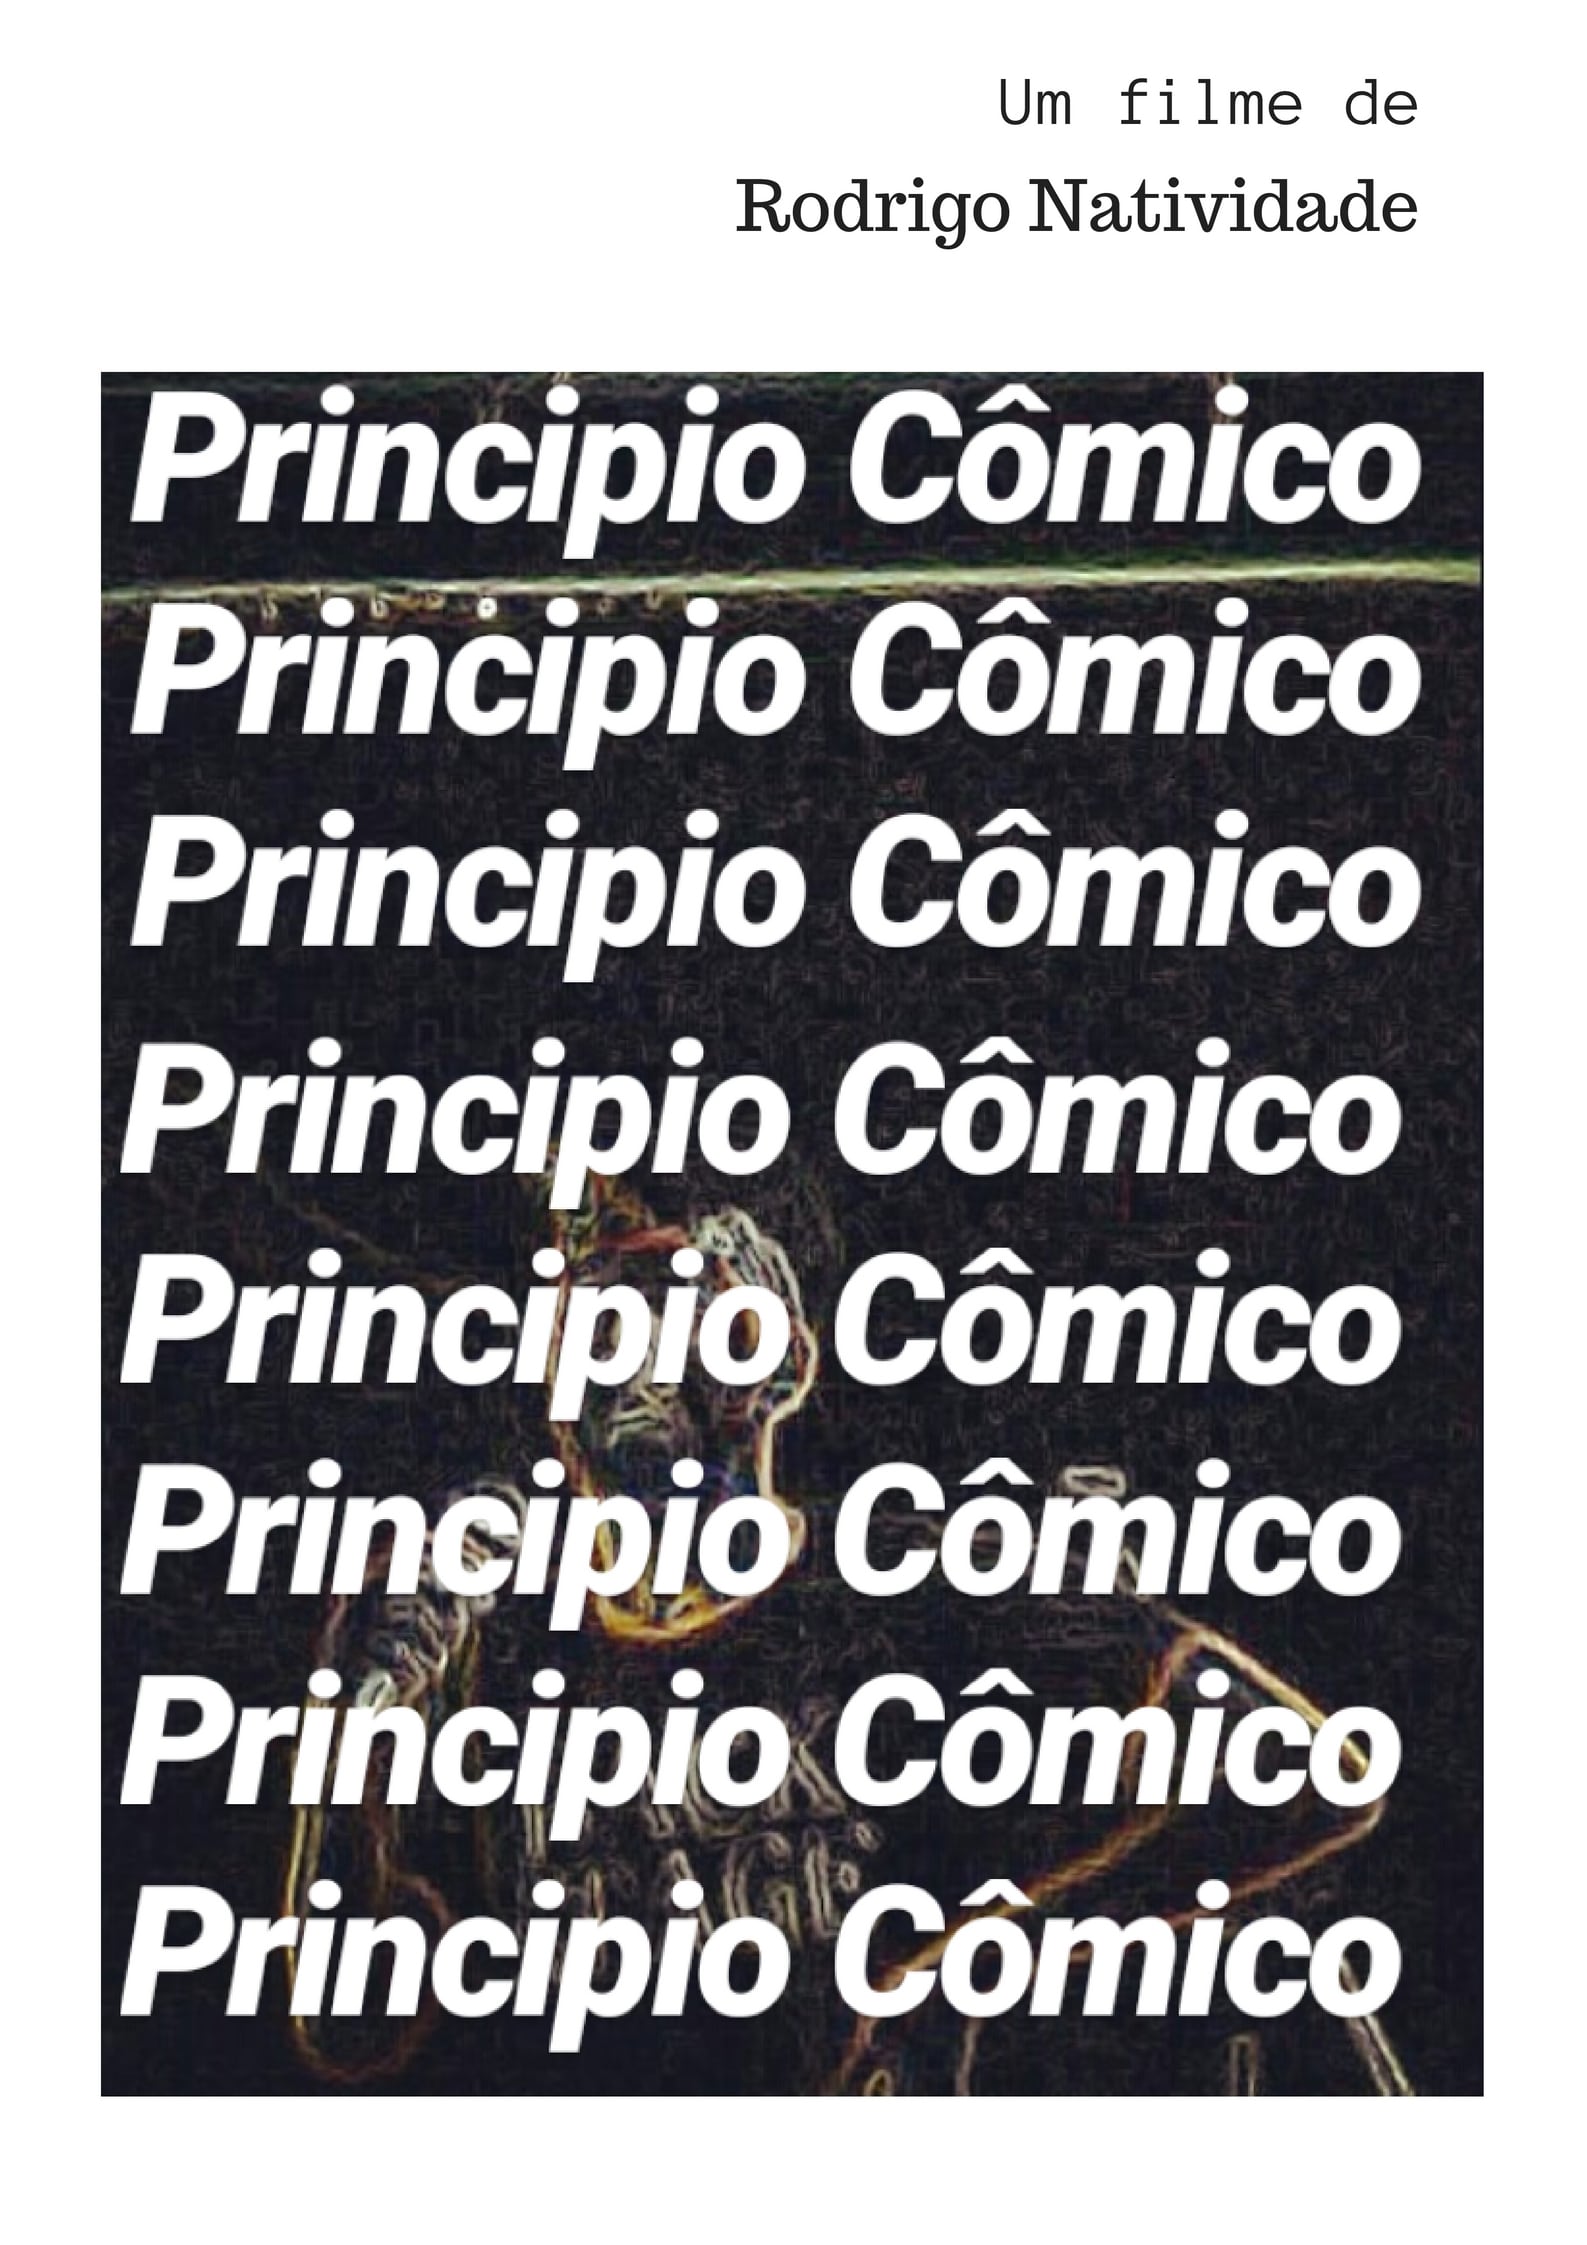 Principio Cômico